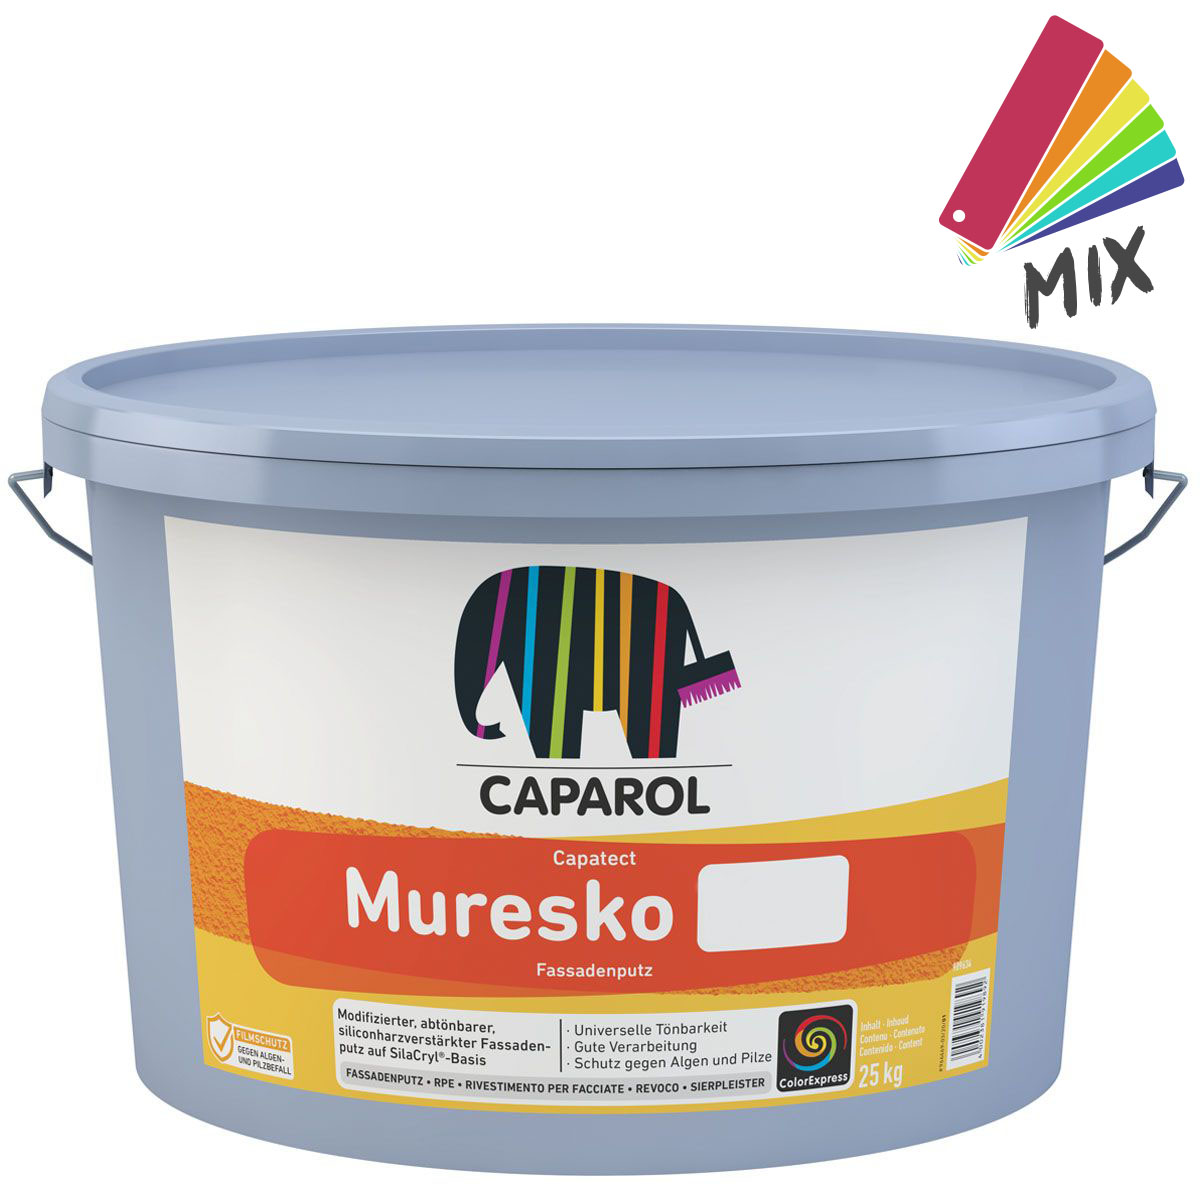 Caparol Capatect Muresko Fassadenputz K30 (3mm) 25kg, MIX